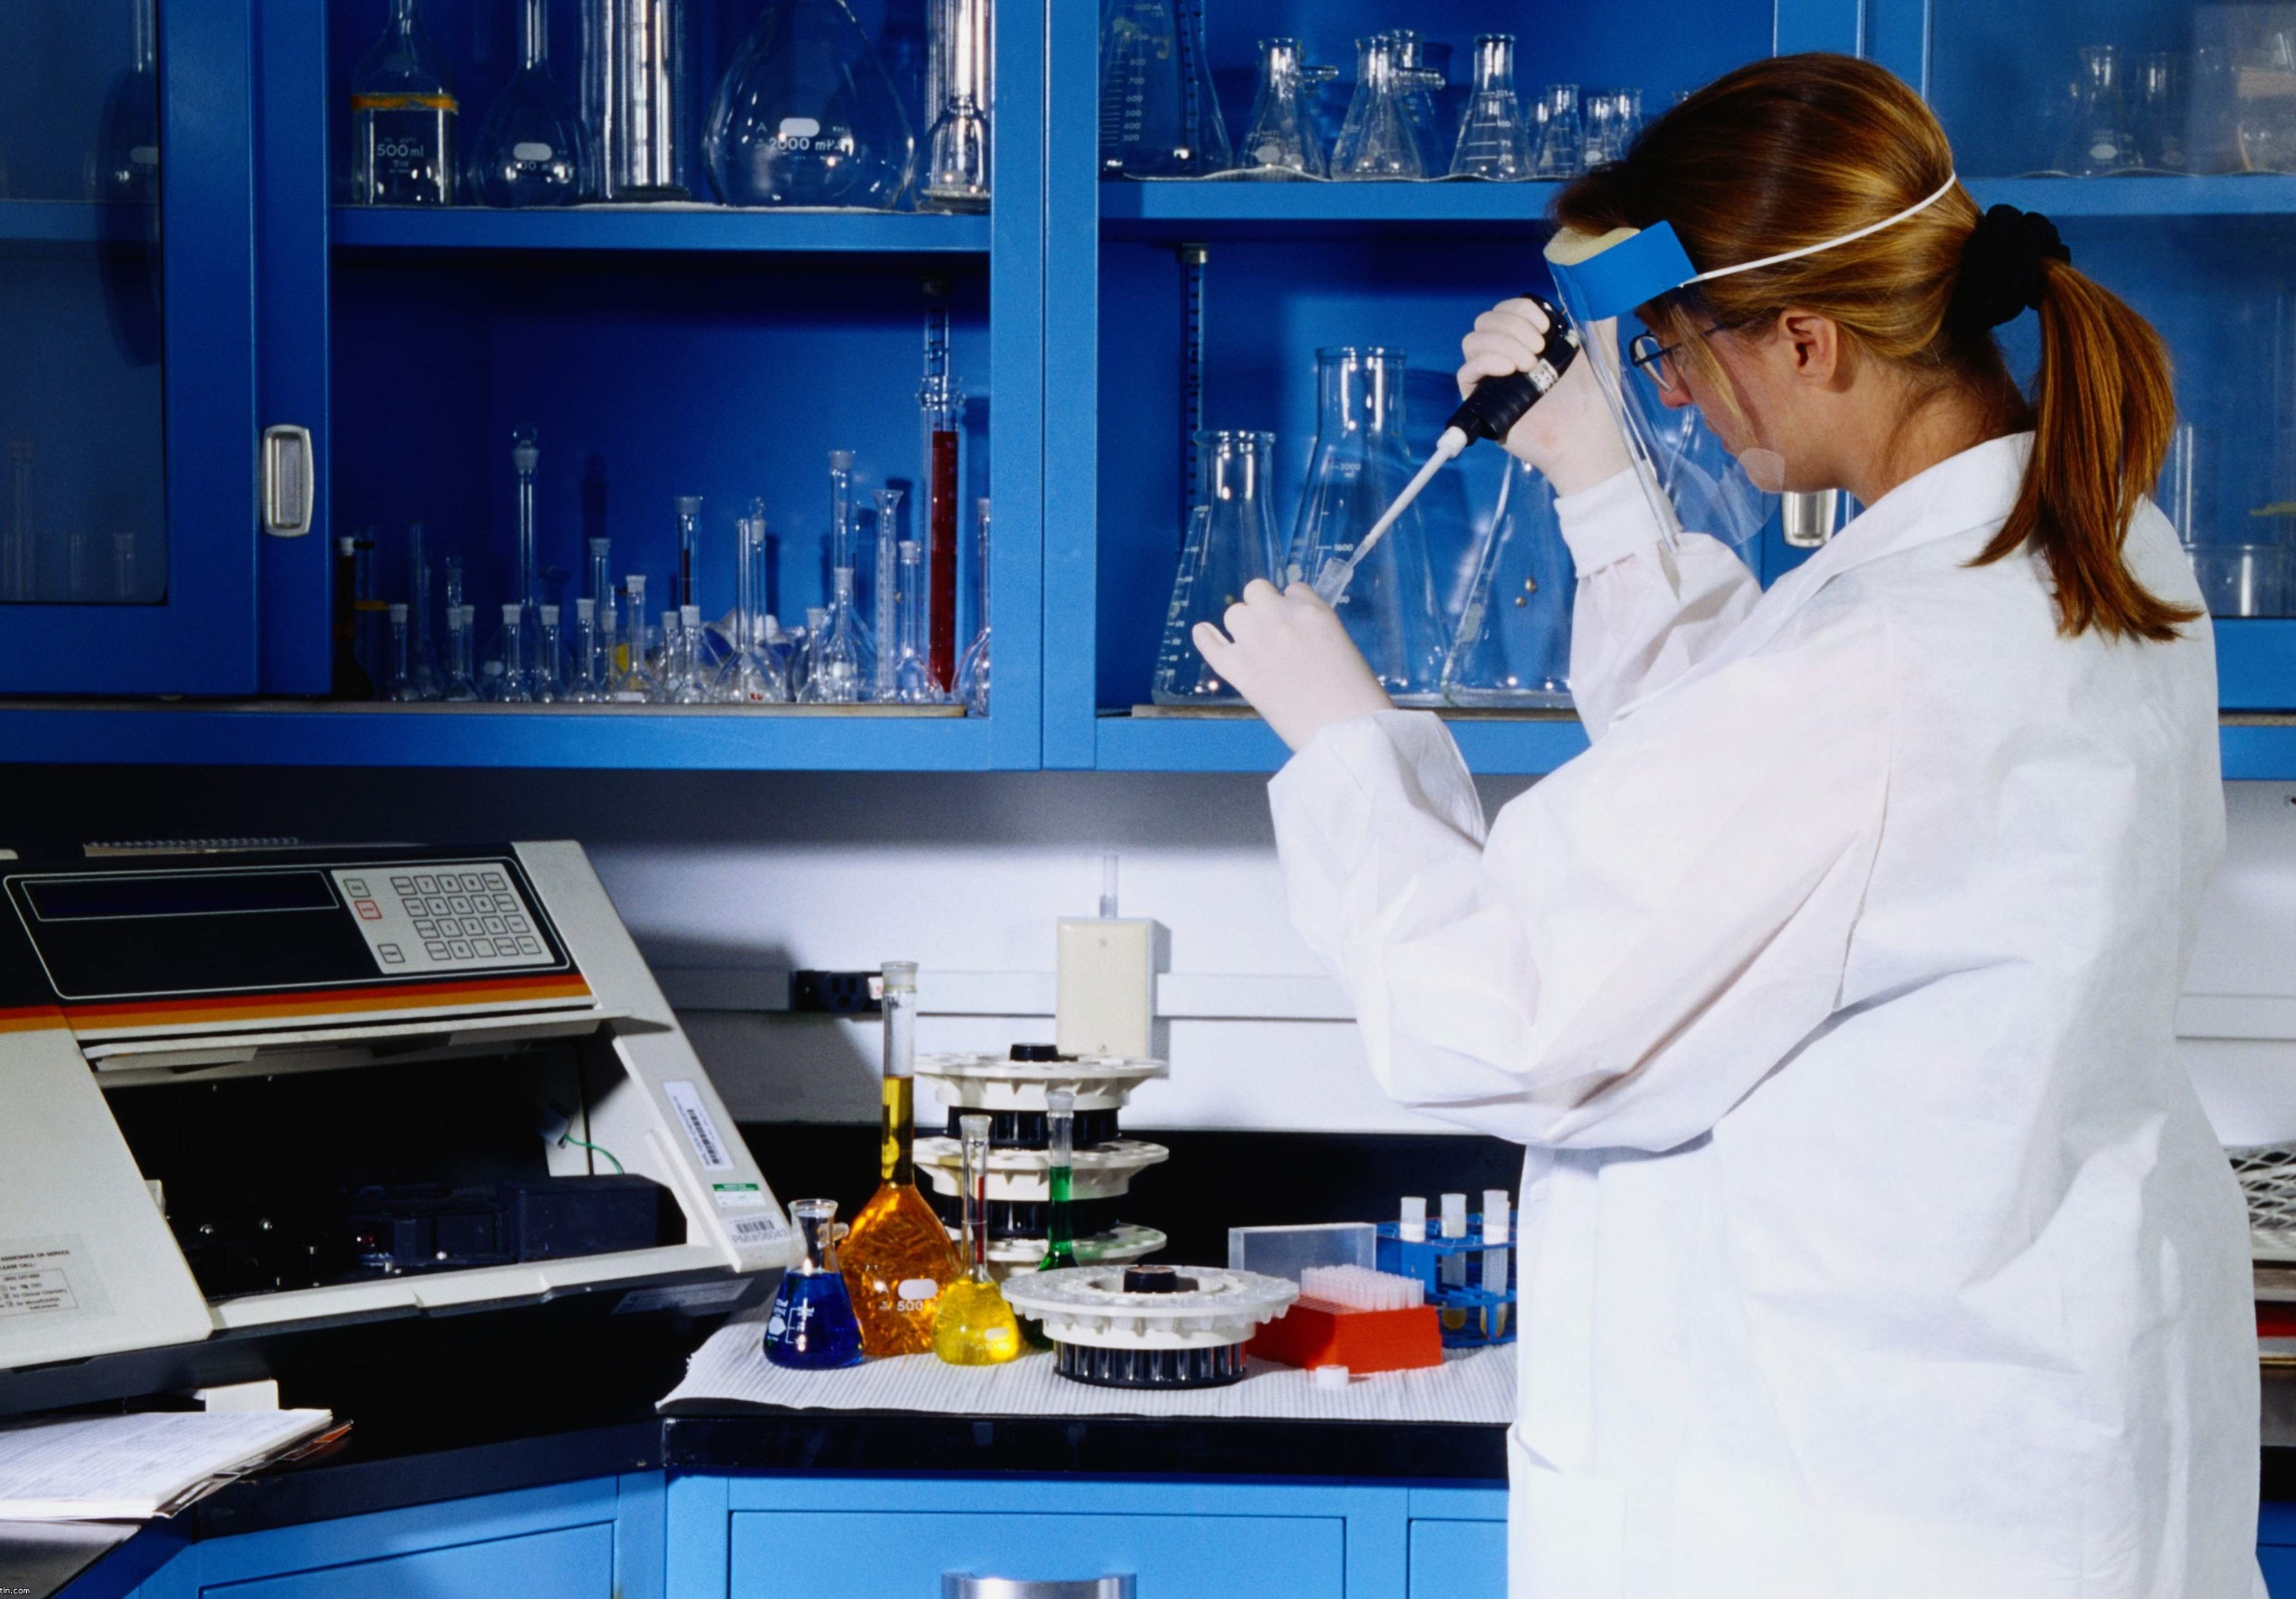 УМВД закупит оборудование для ДНК-лаборатории на 10 млн